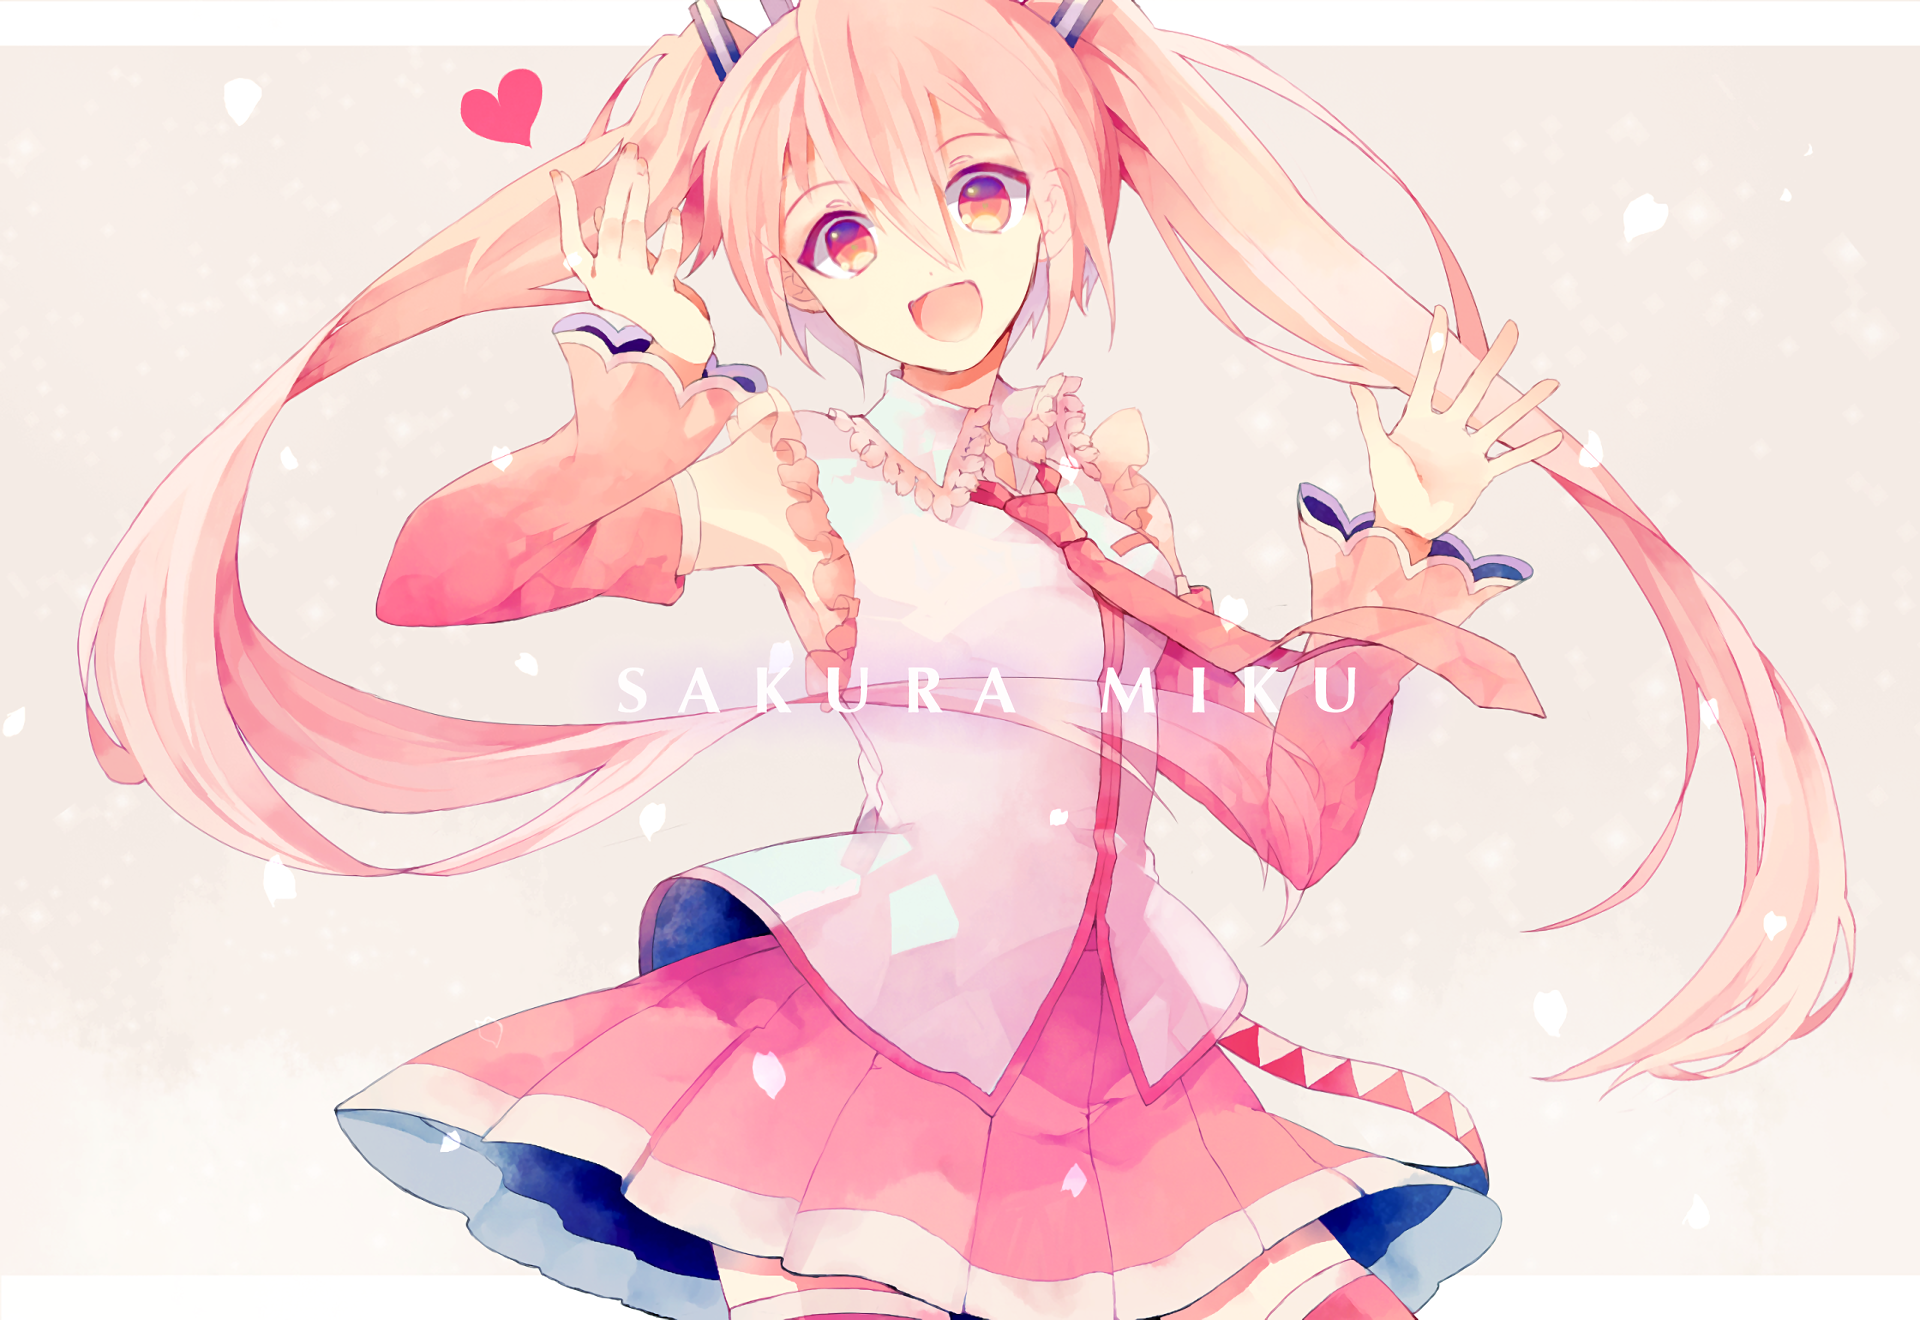 Sakura Miku HD Wallpaper and Background Image